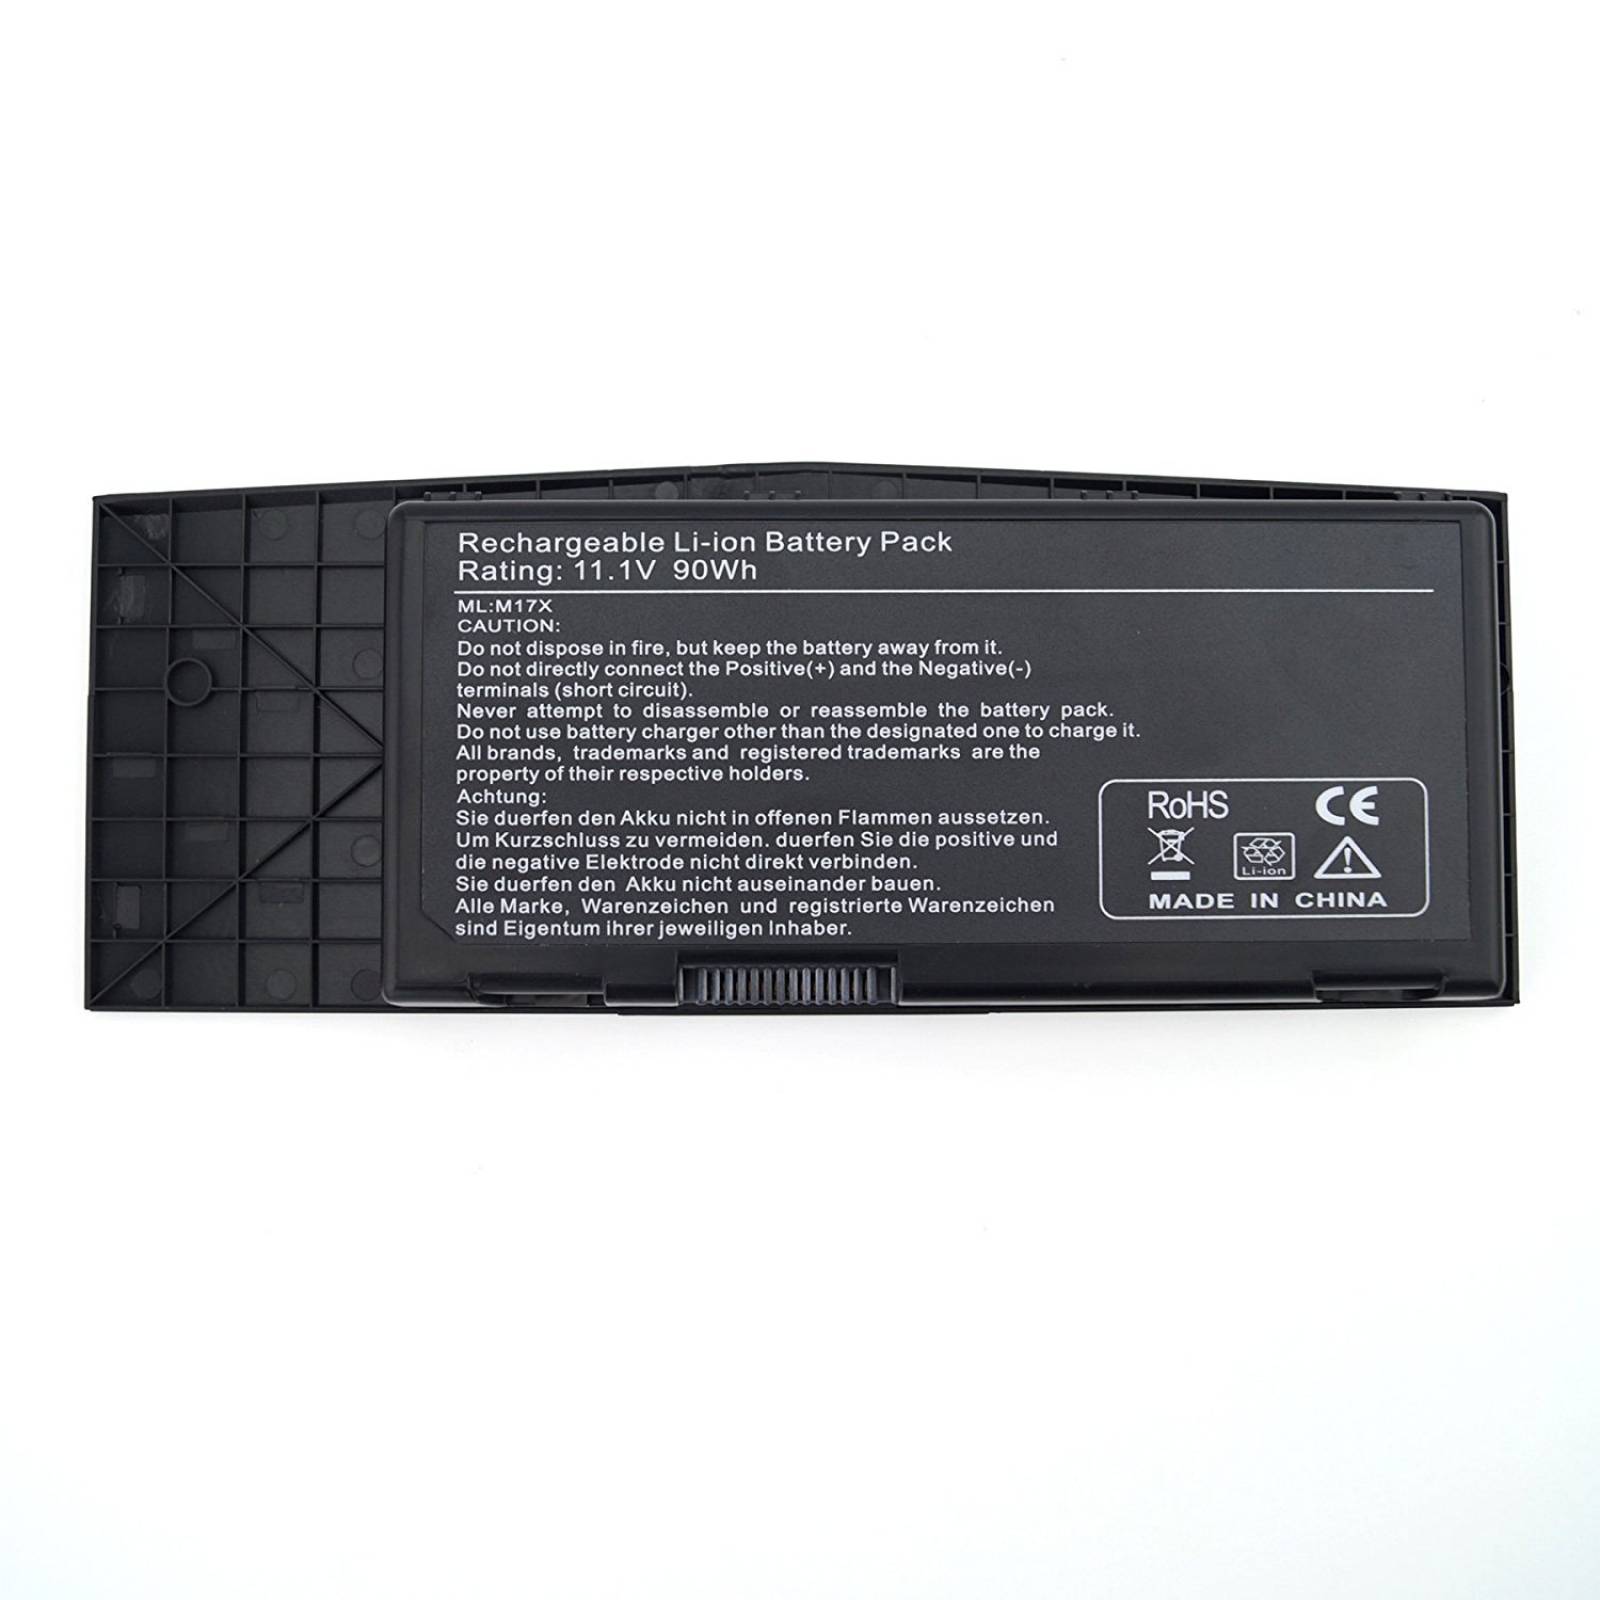 B:DJW 11.1V batería 90Wh Alienware M17 R3, R4 Alienware M17, D